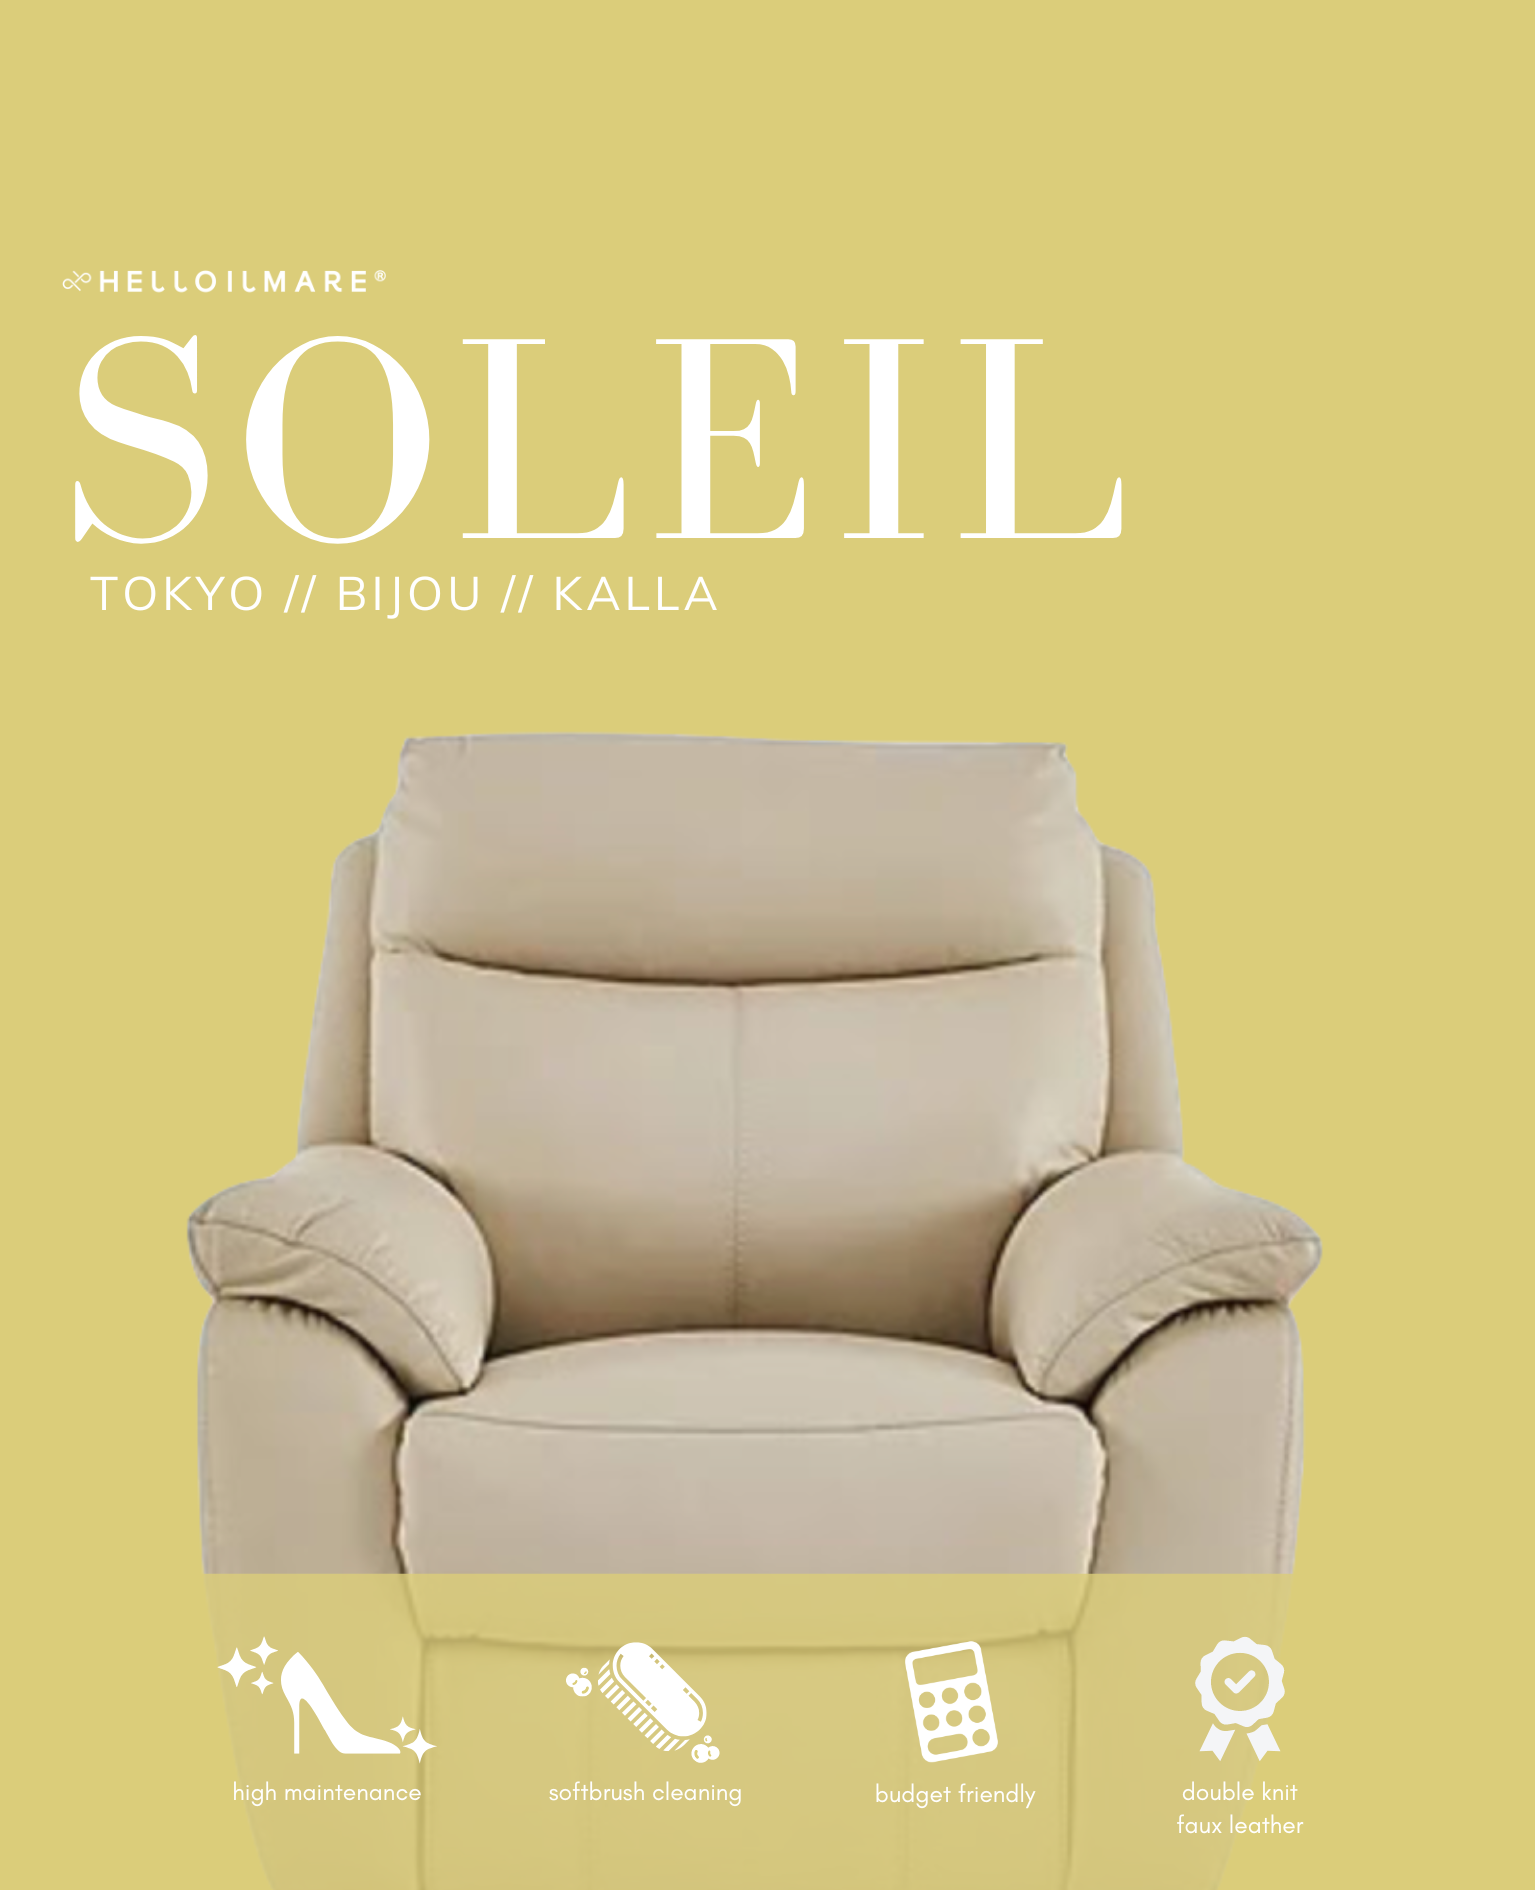 4 Seater Soleil - Helloilmare